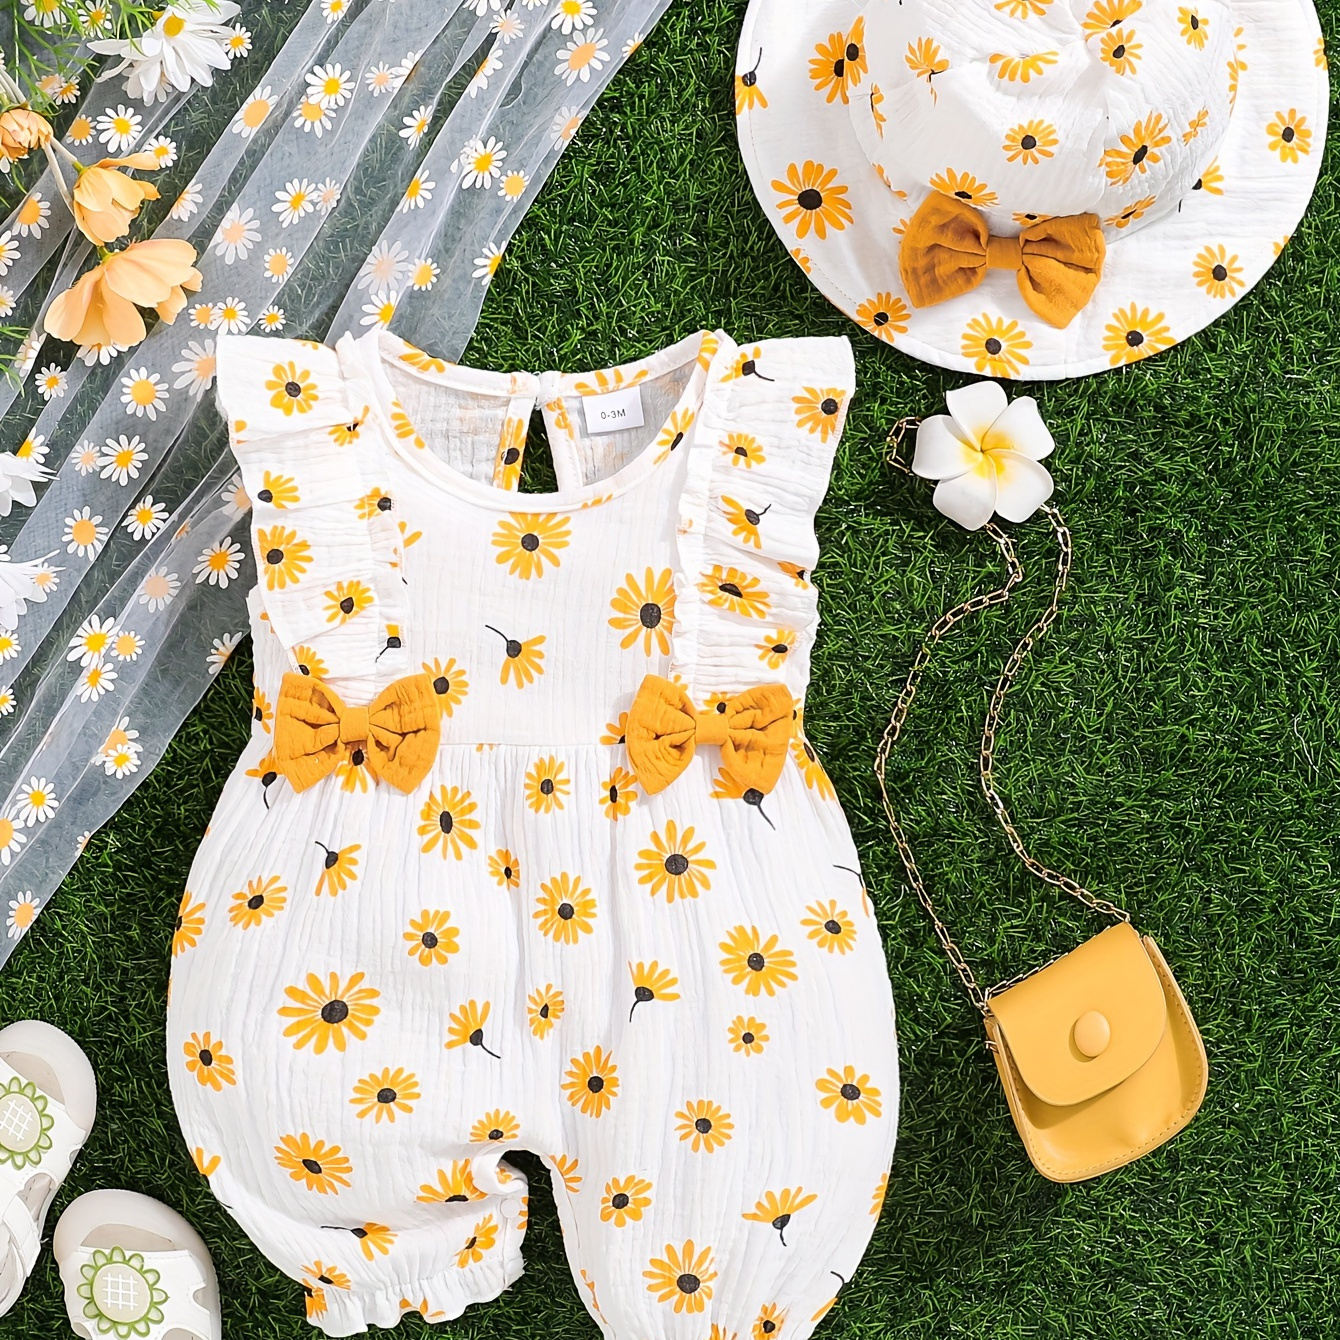 

Baby's Cartoon Flower Full Print Bodysuit & Hat, Casual Sleeveless Romper, Toddler & Infant Girl's Onesie For Summer, As Gift